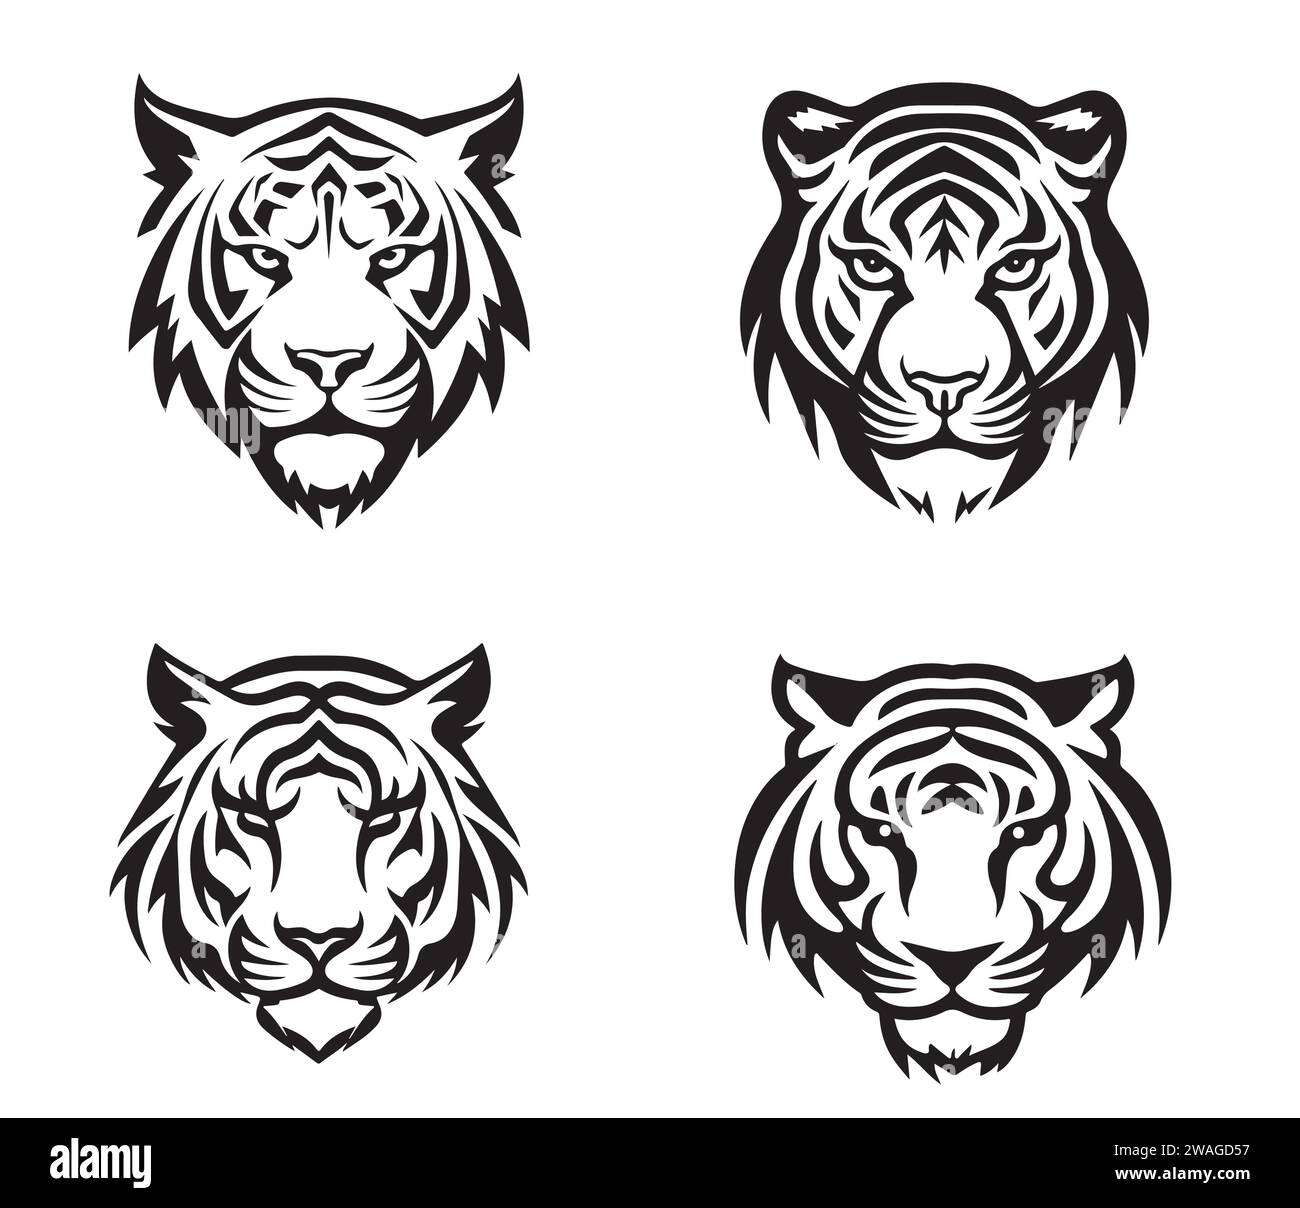 Ensemble de têtes de tigre avec différentes expressions en colère du museau. Symboles pour tatouage, emblème ou logo, isolé sur fond blanc. Illustration de Vecteur